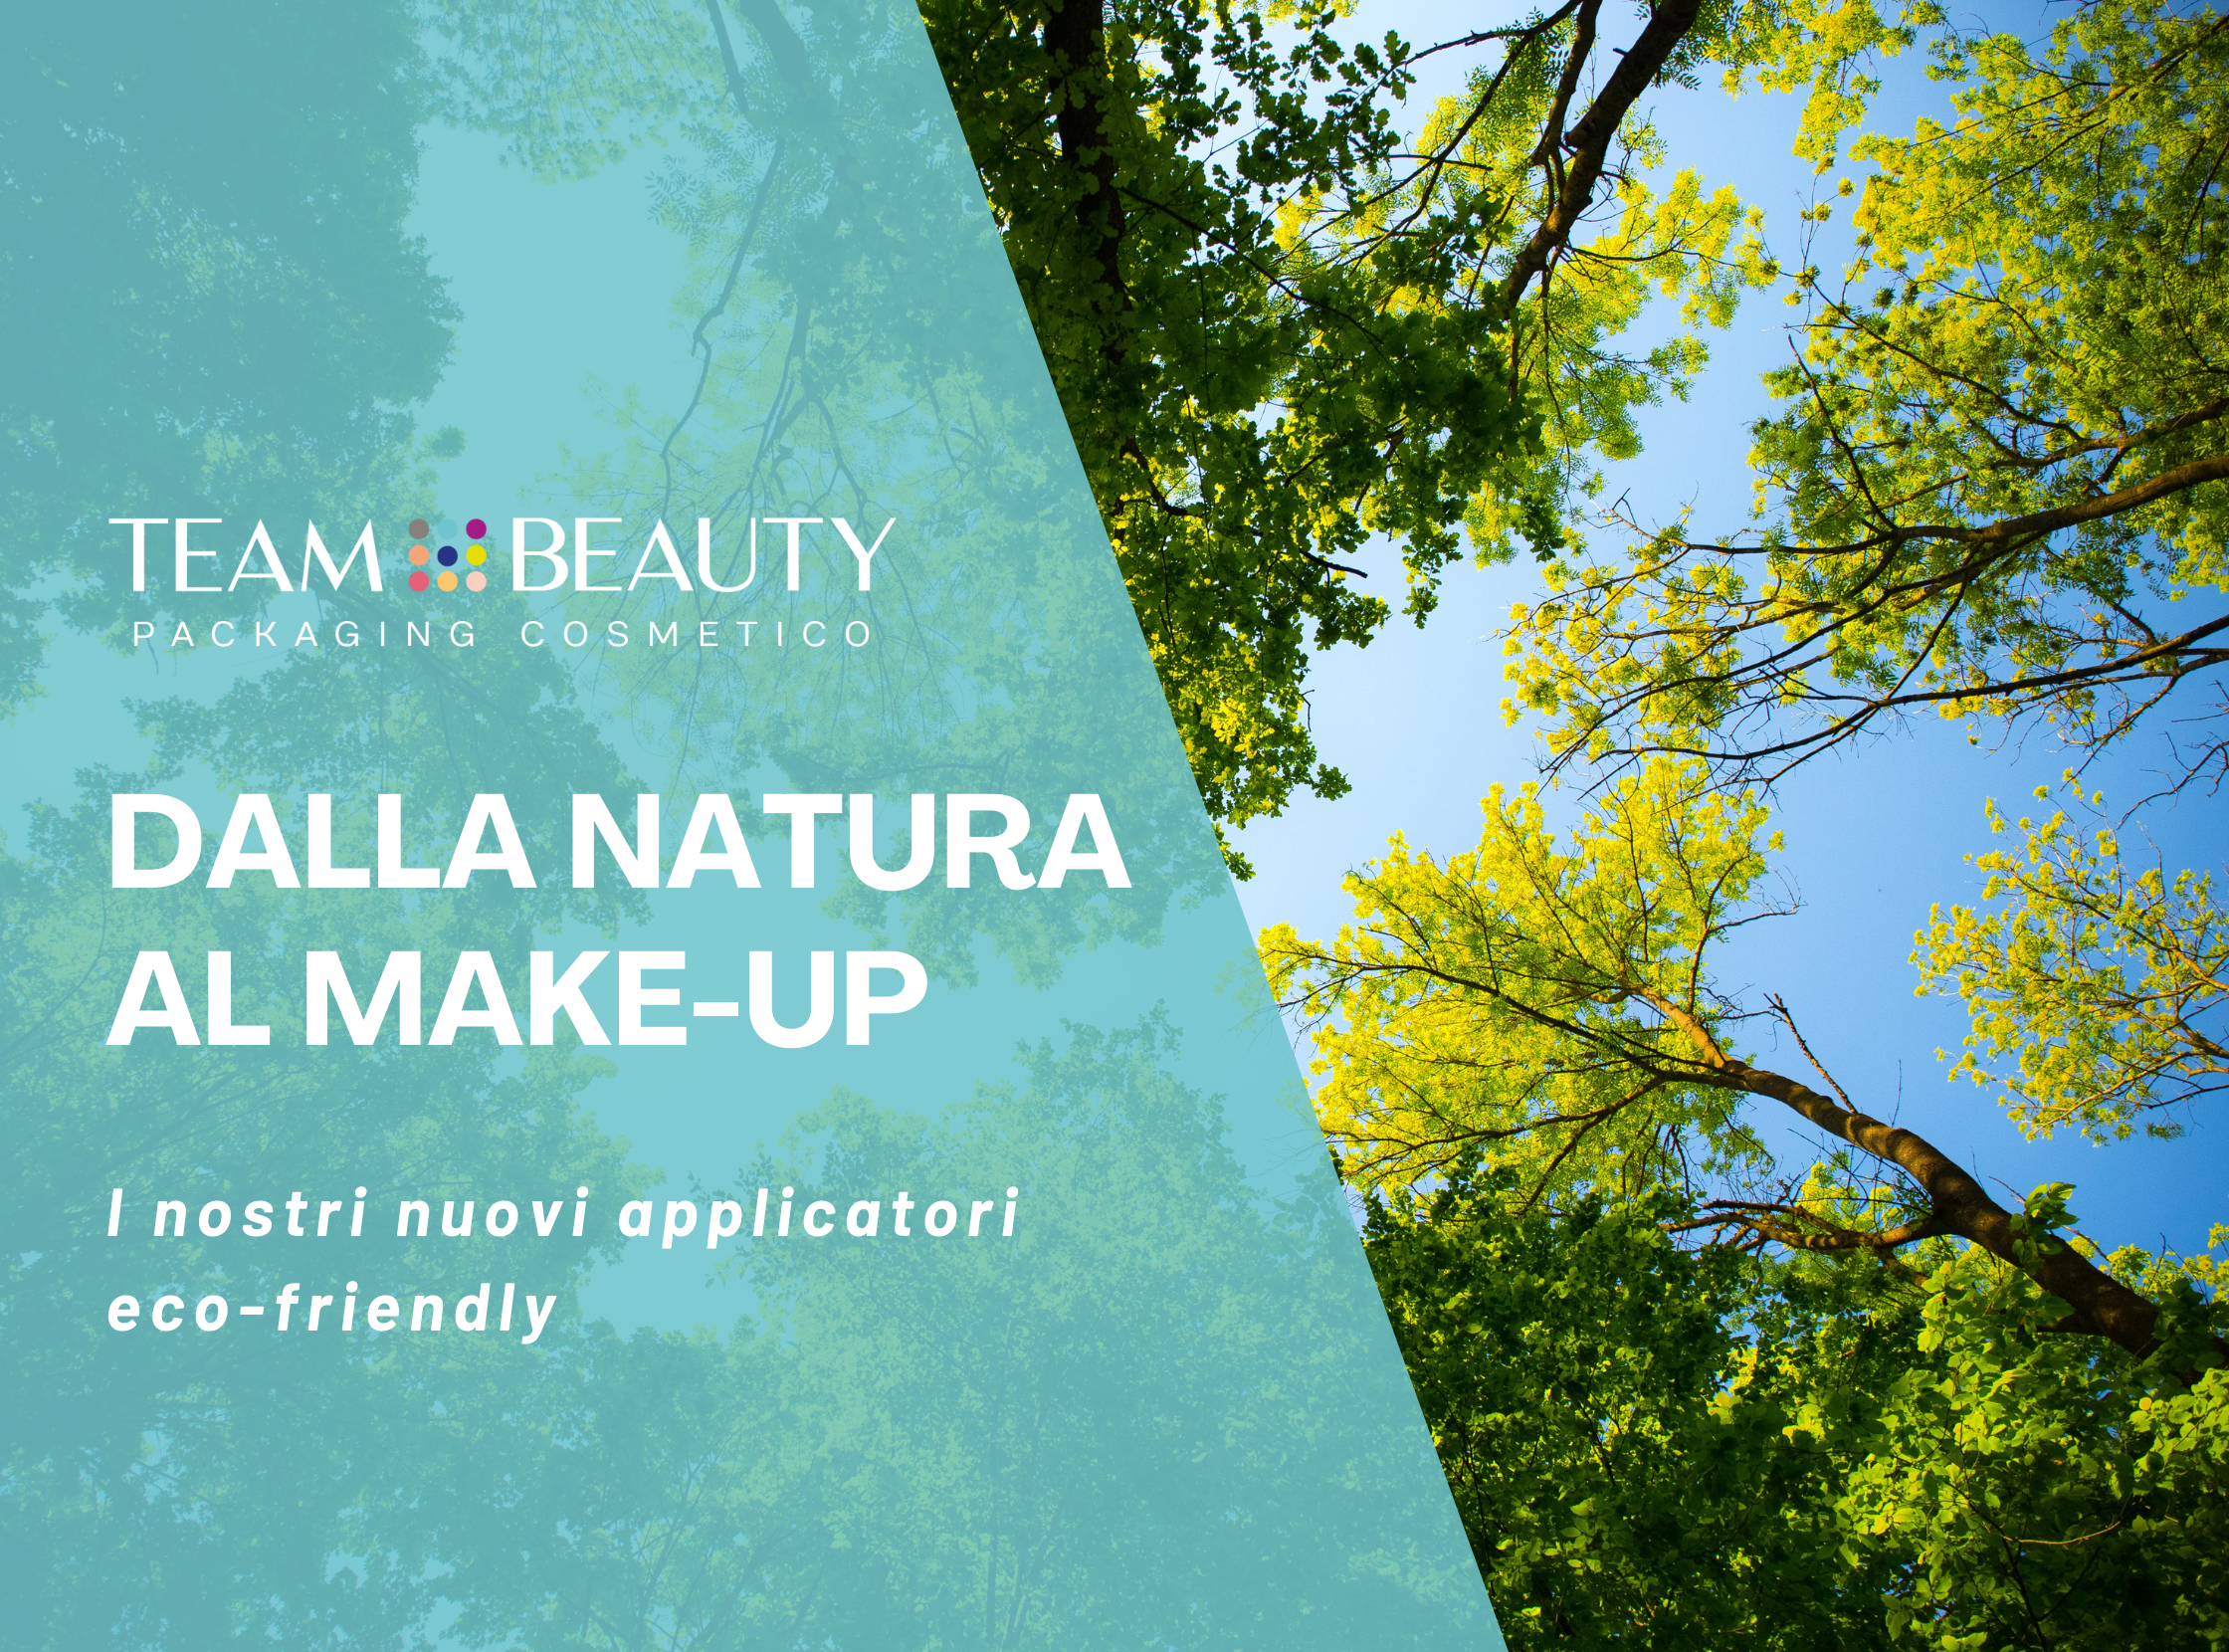 Dalla natura al make-up: i nostri nuovi applicatori eco-friendly